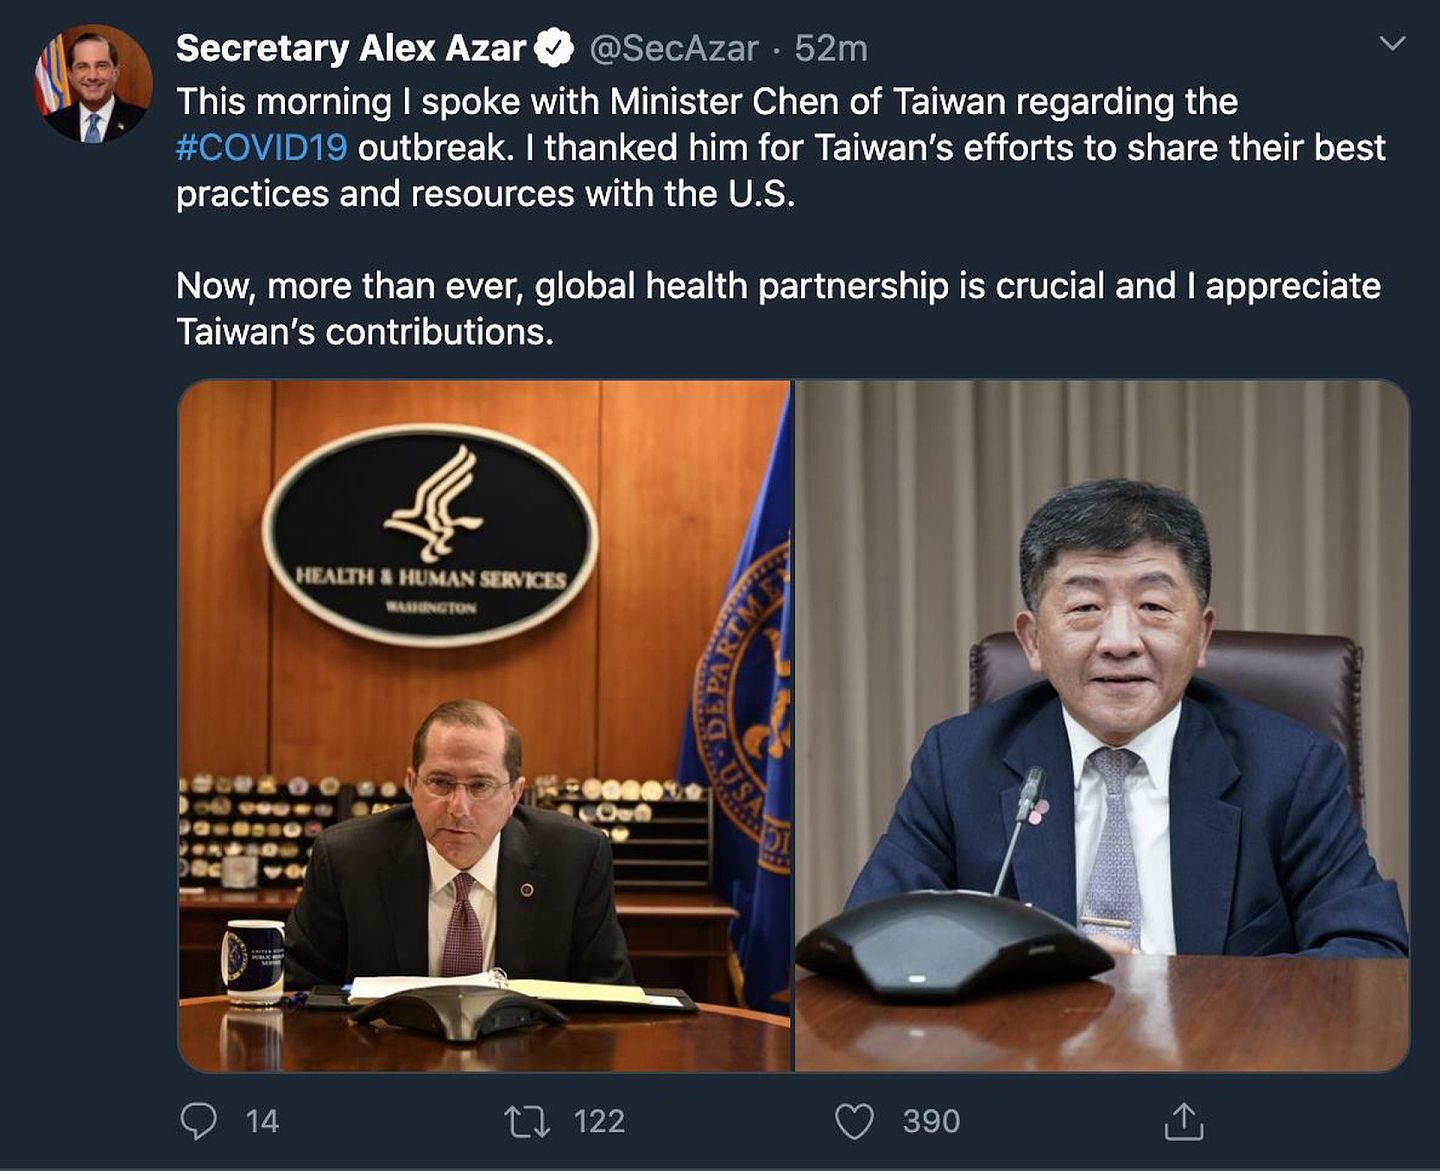 结束台美的电话会议后，美国卫生与公众服务部部长亚历克斯·阿扎在其推特上感谢台湾对美国分享了最佳的防疫策略，也肯定台湾在全球卫生伙伴关系上的贡献。（Twitter＠Secretary Alex Azar）